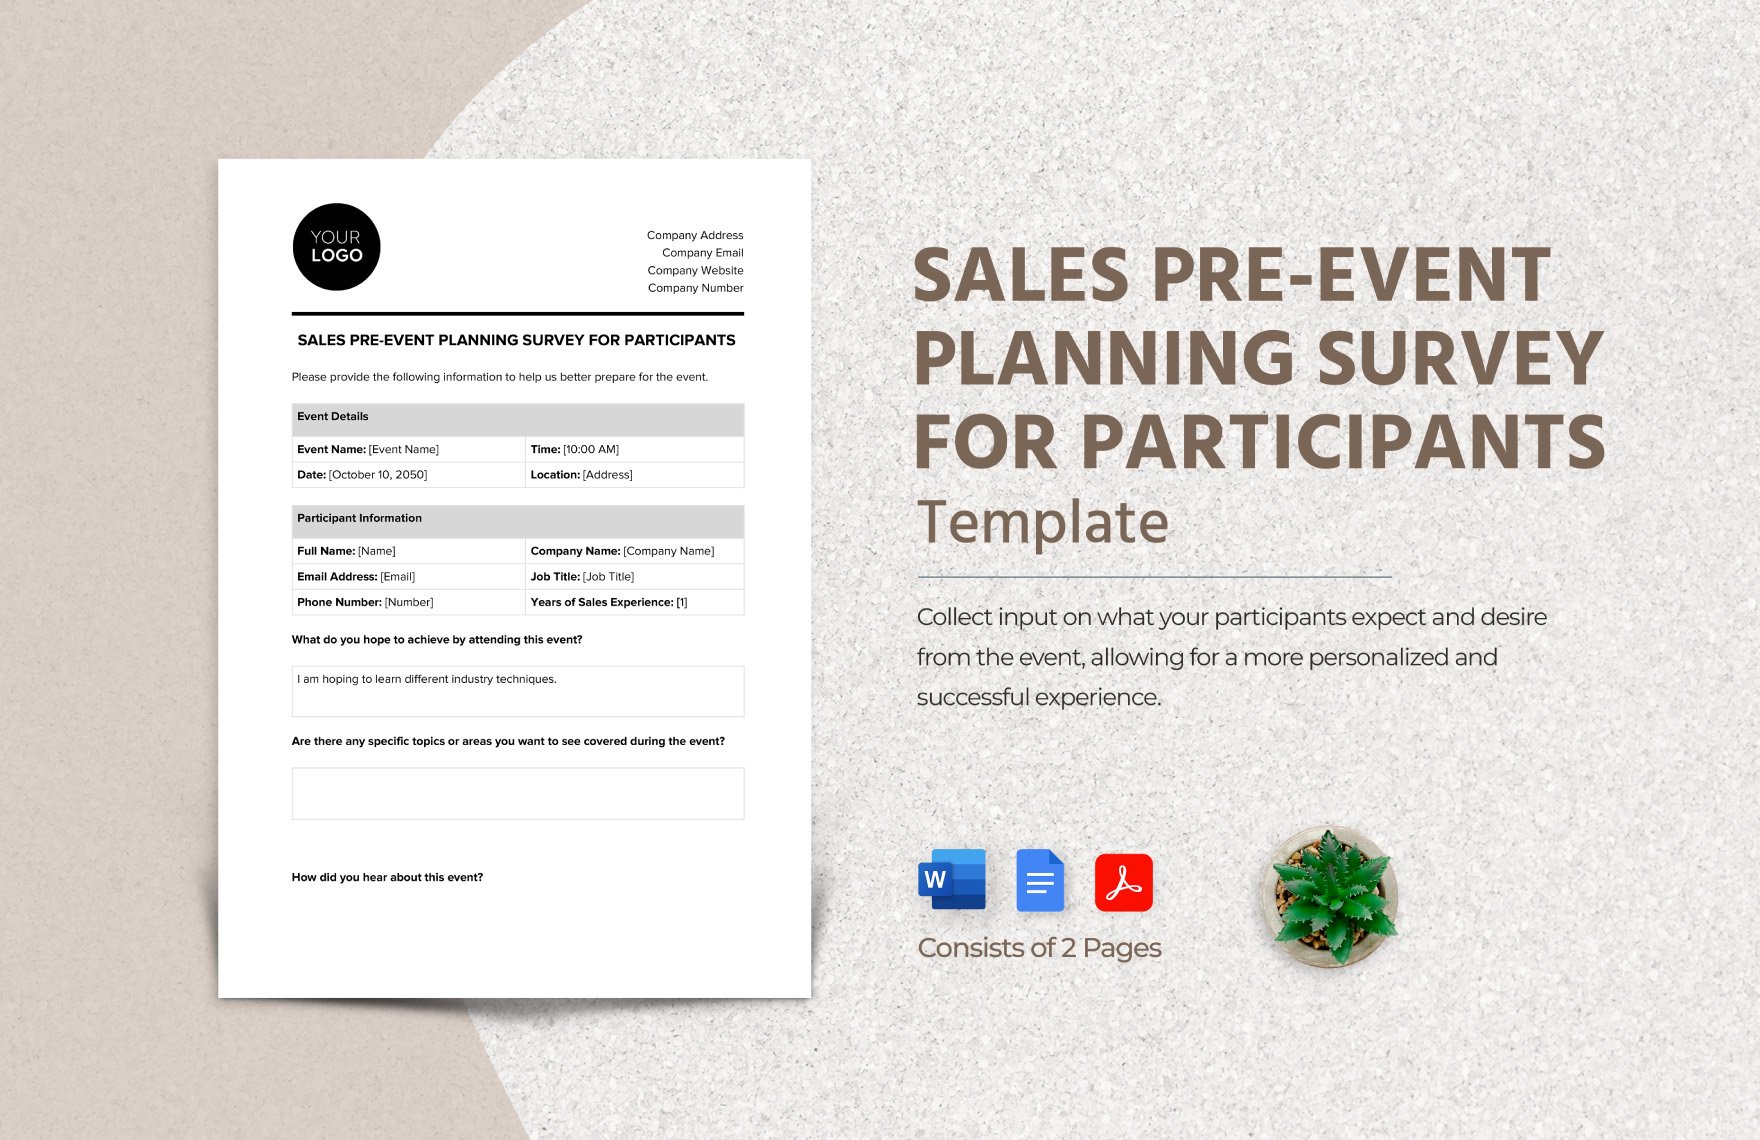 Sales Pre-Event Planning Survey for Participants Template